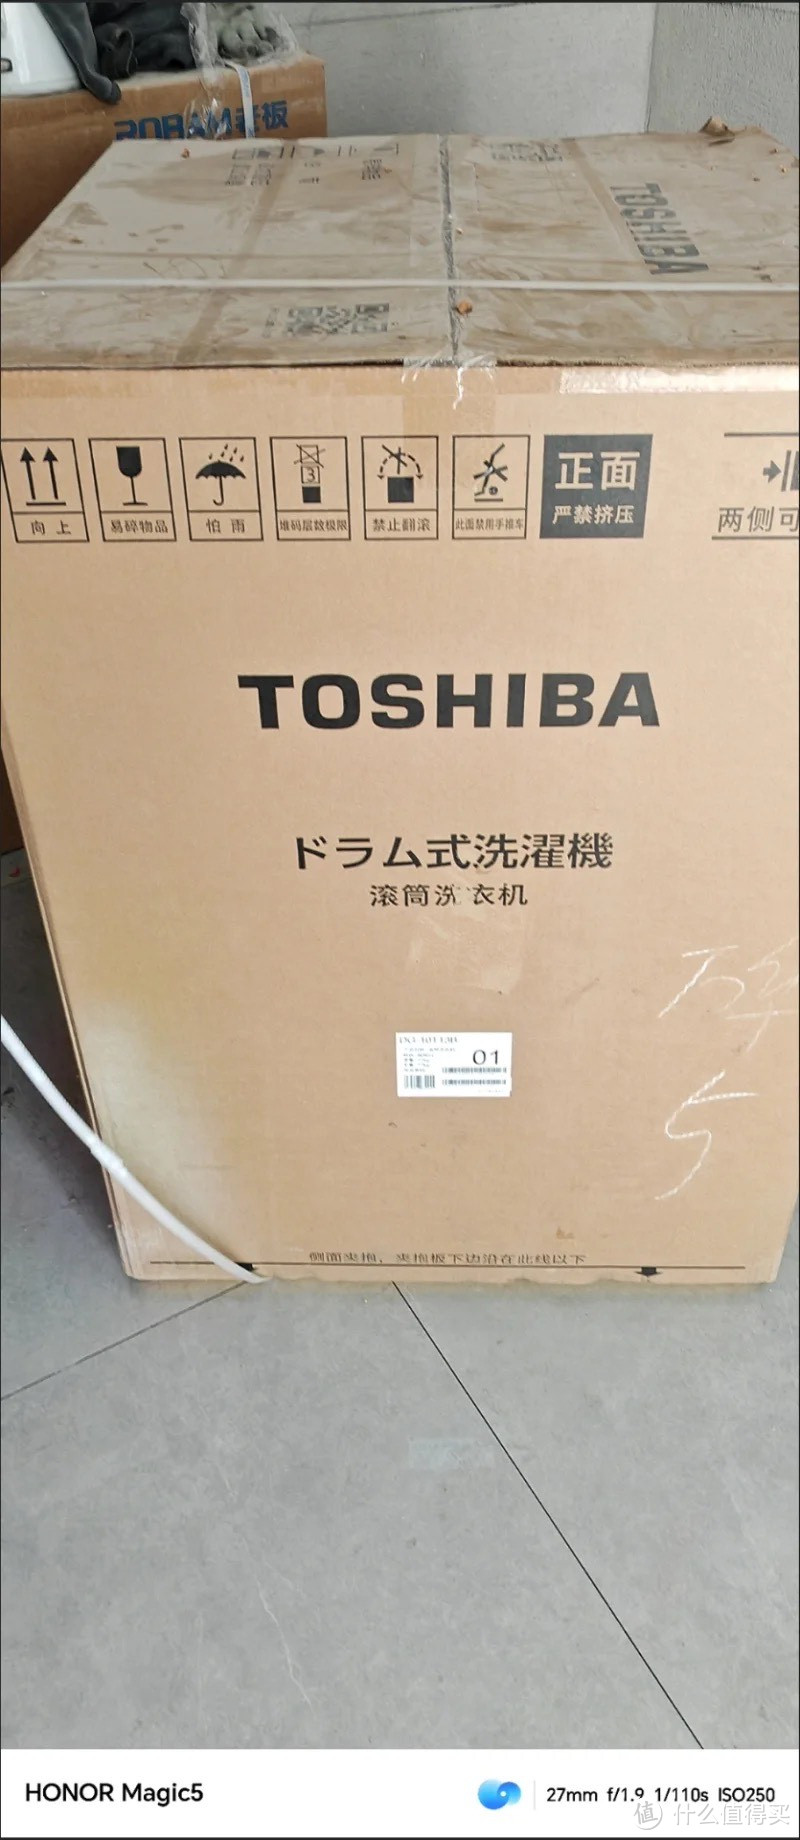 ￼￼东芝（TOSHIBA）滚筒洗衣机全自动 10公斤大容量 BLDC变频电机 UFB超微泡 澎湃巨浪洗 以旧换新 ￼￼